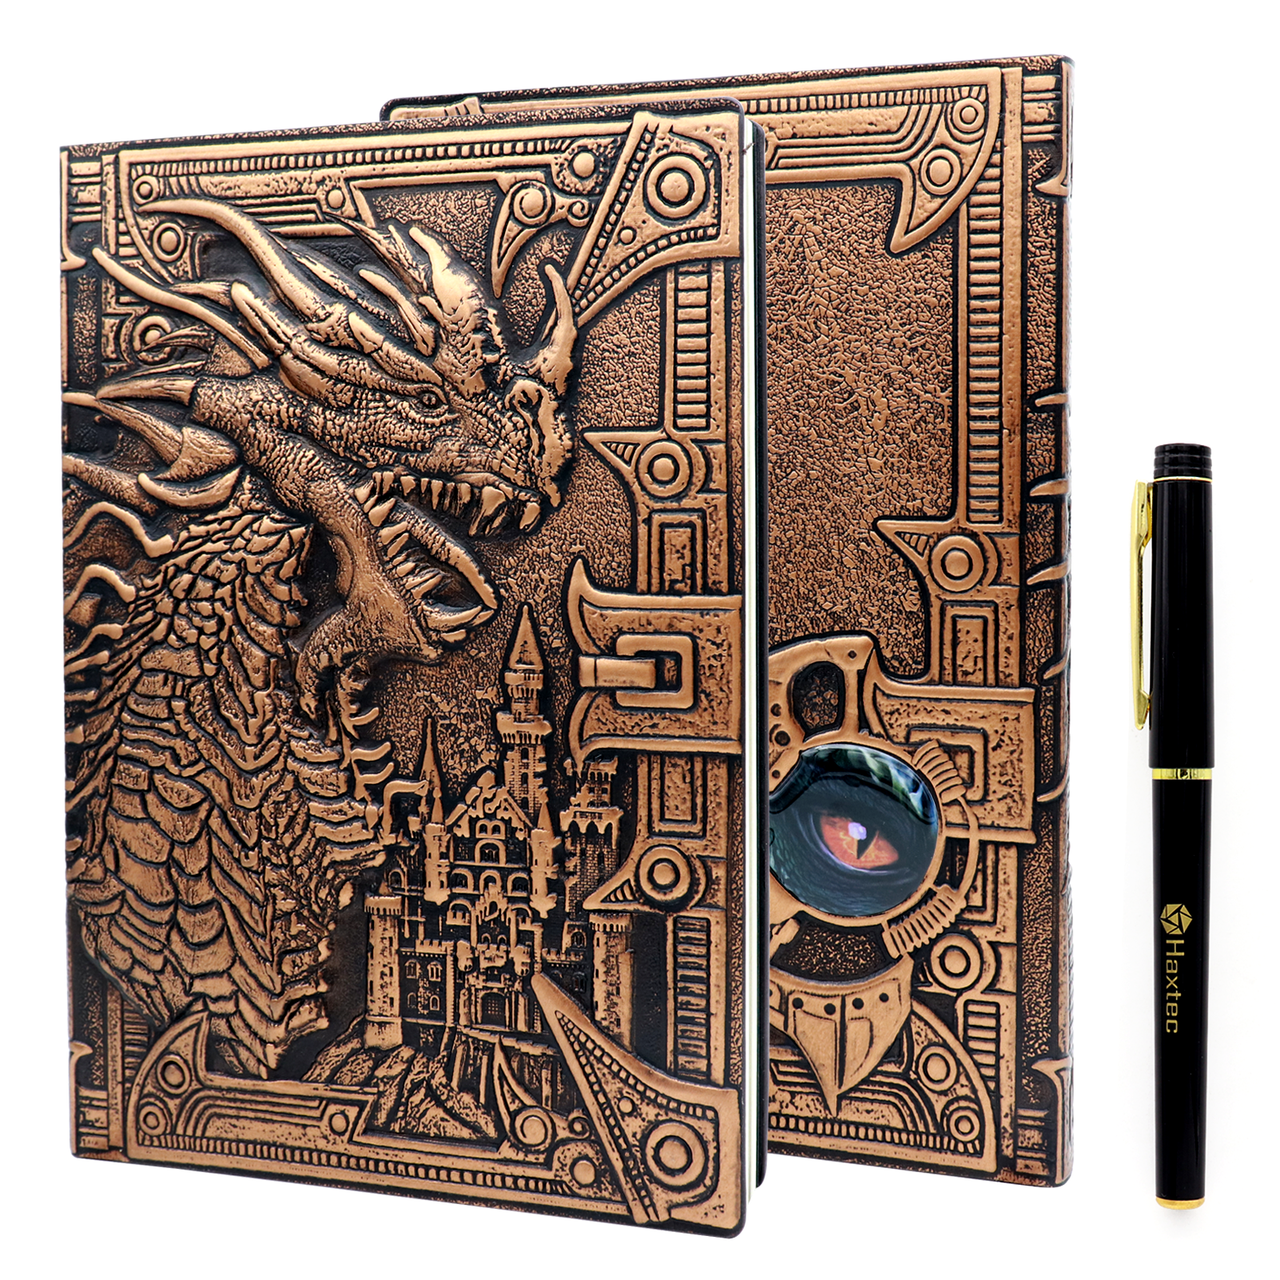 dragon dnd notebook